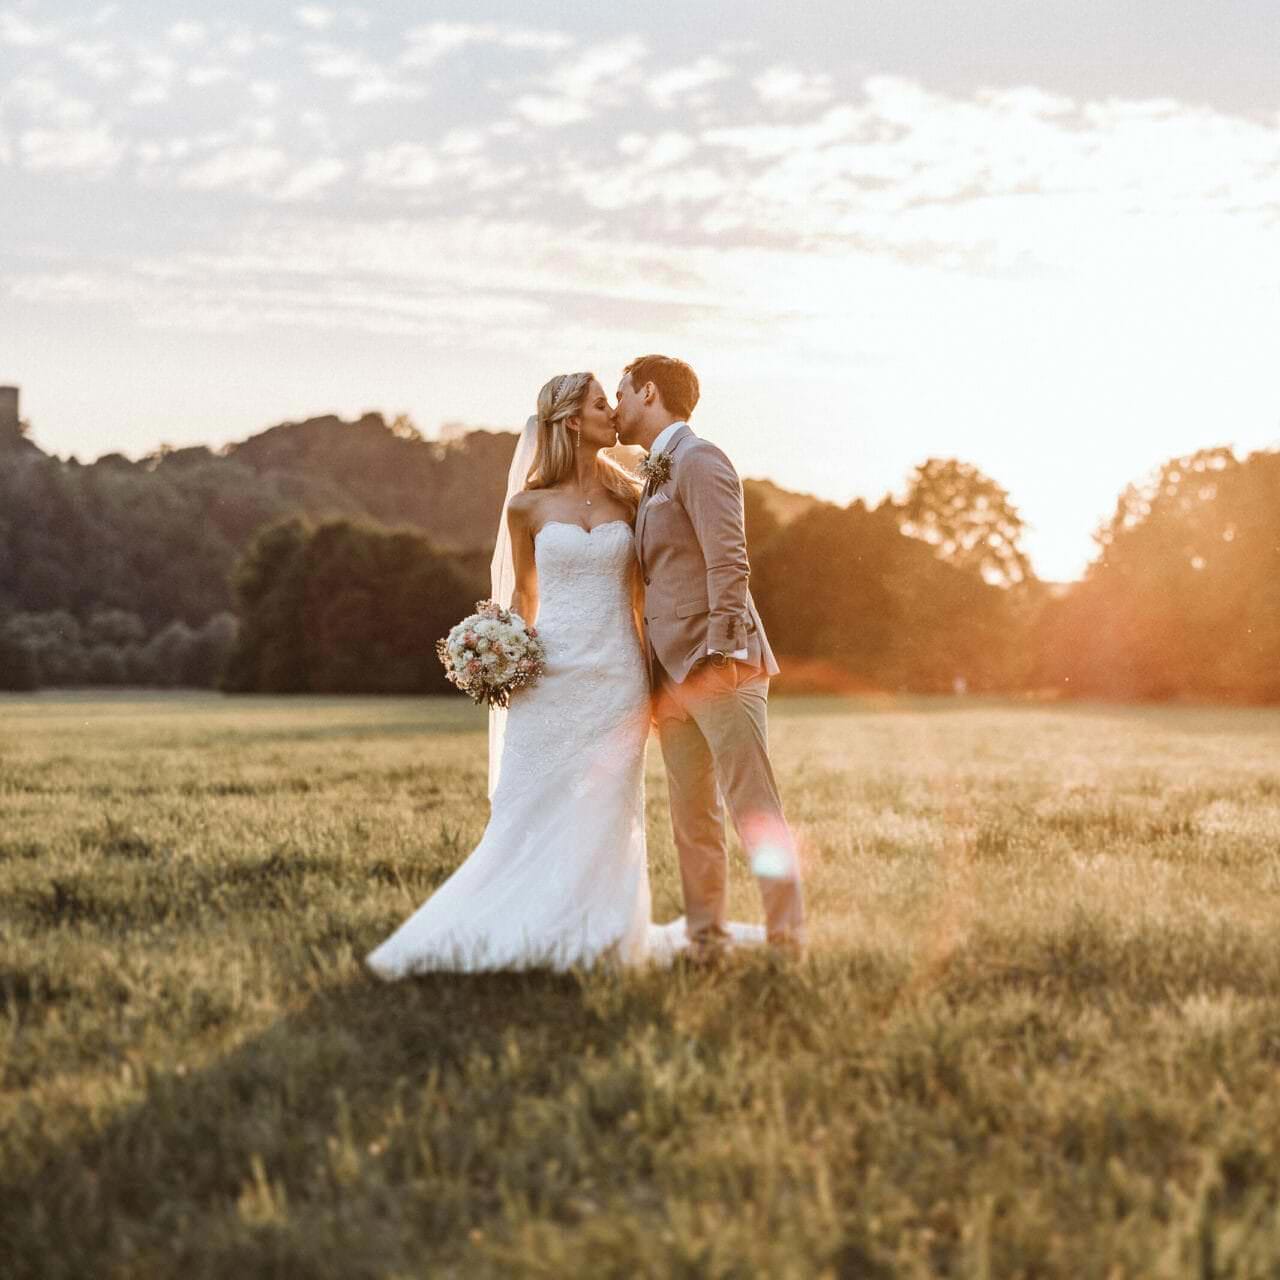 Hochzeitsfotograf Dorsten Hochzeit Heiraten Hochzeitsfotos - Hochzeitspaar küsst sich auf einer Wiese bei Sonnenuntergang. Bräutigam hat seine linke Hand in der Hosentasche. Die Braut hält ihren Blumenstrauß in der rechten Hand fest. Im Hintergrund ist Wald zu erkennen